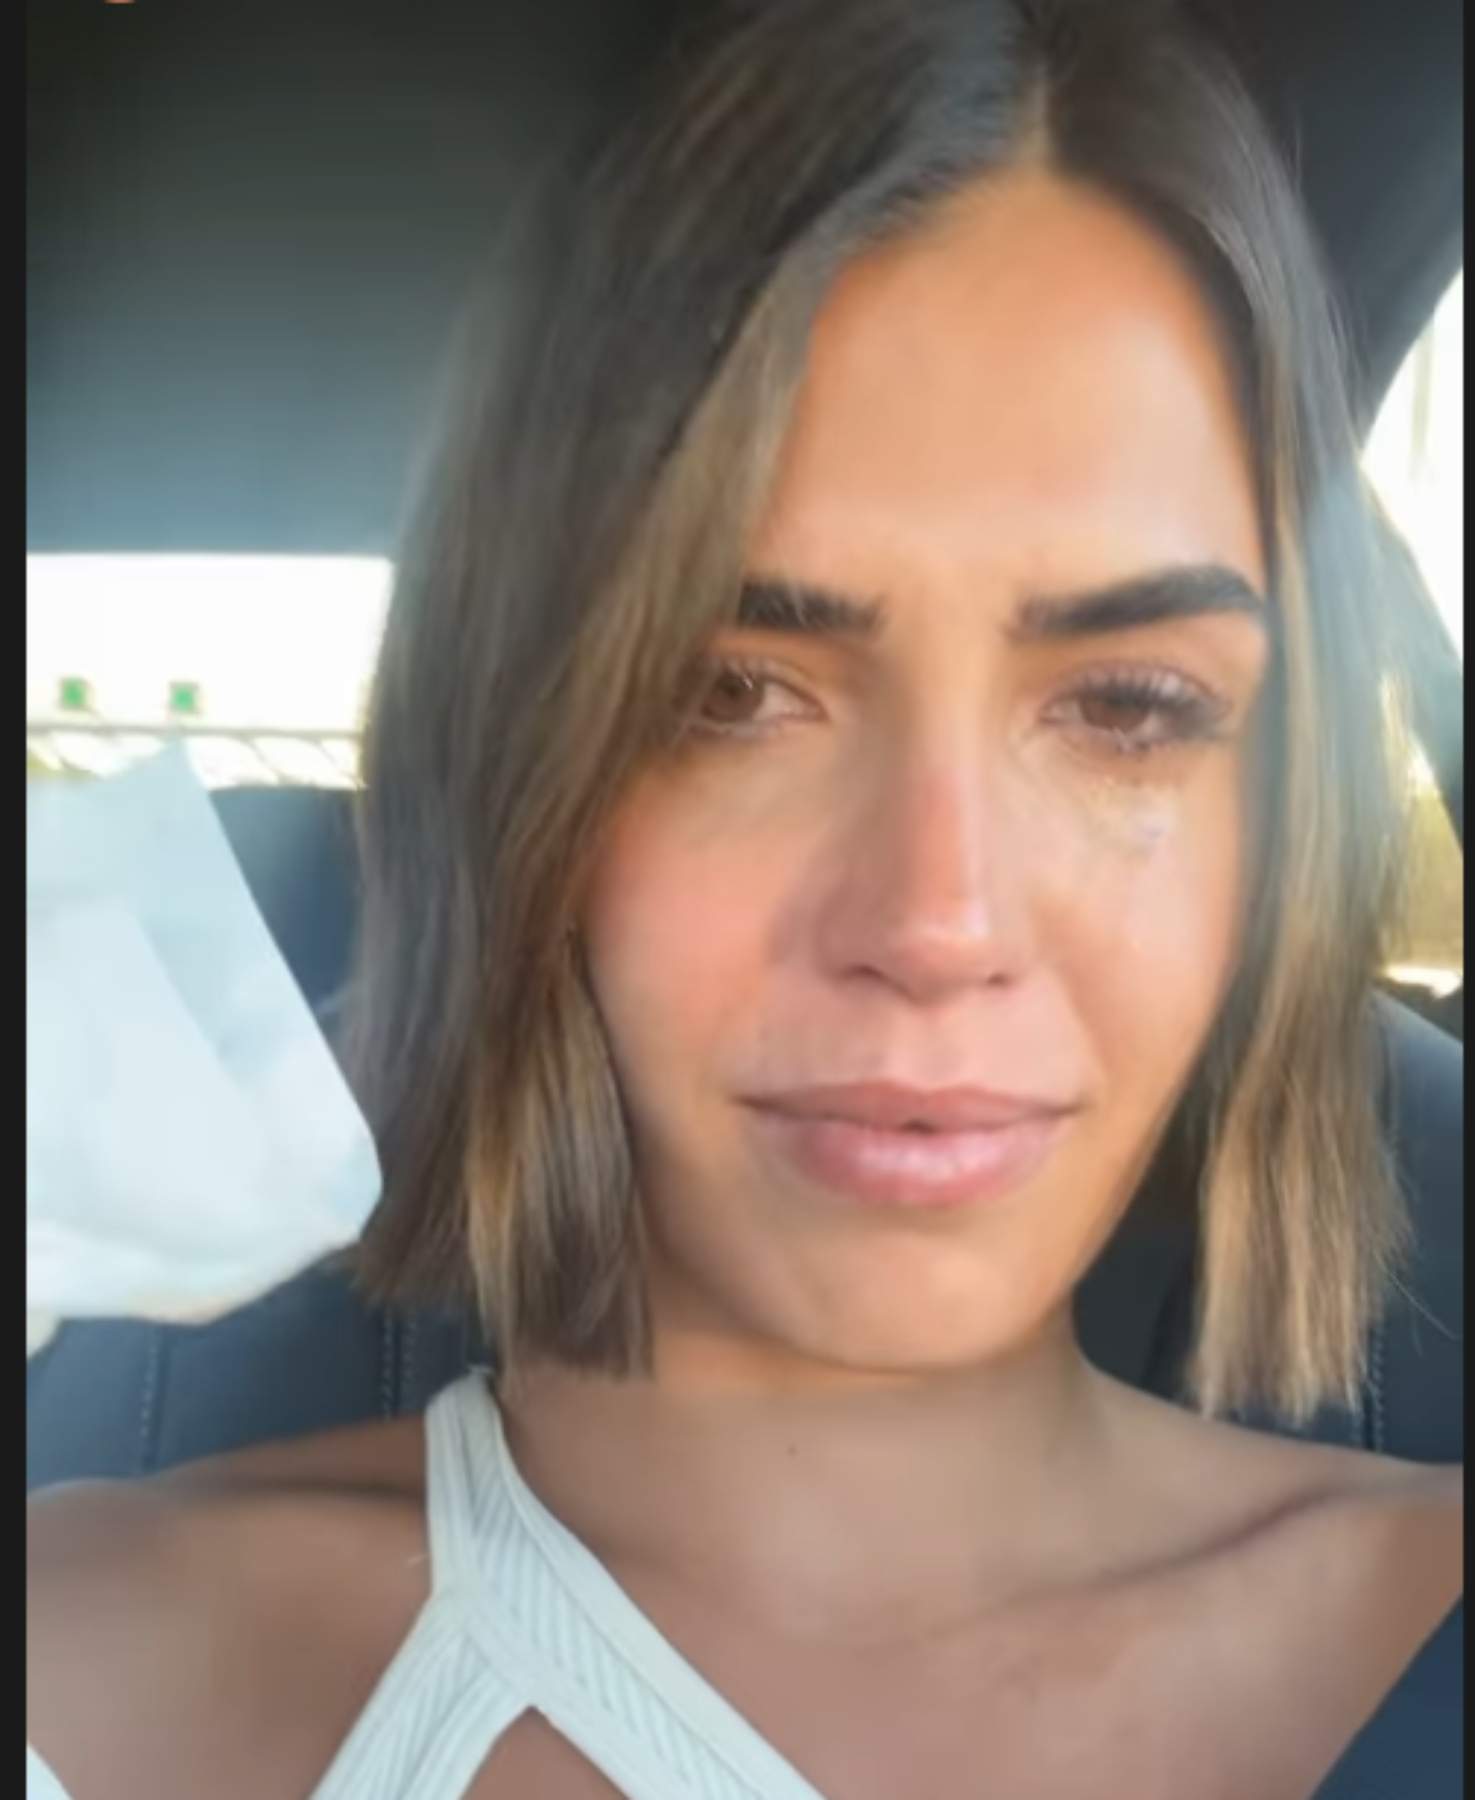 Sofía Suescun a llàgrima viva abans de marxar a 'SV All Stars', revela el seu únic acompanyant